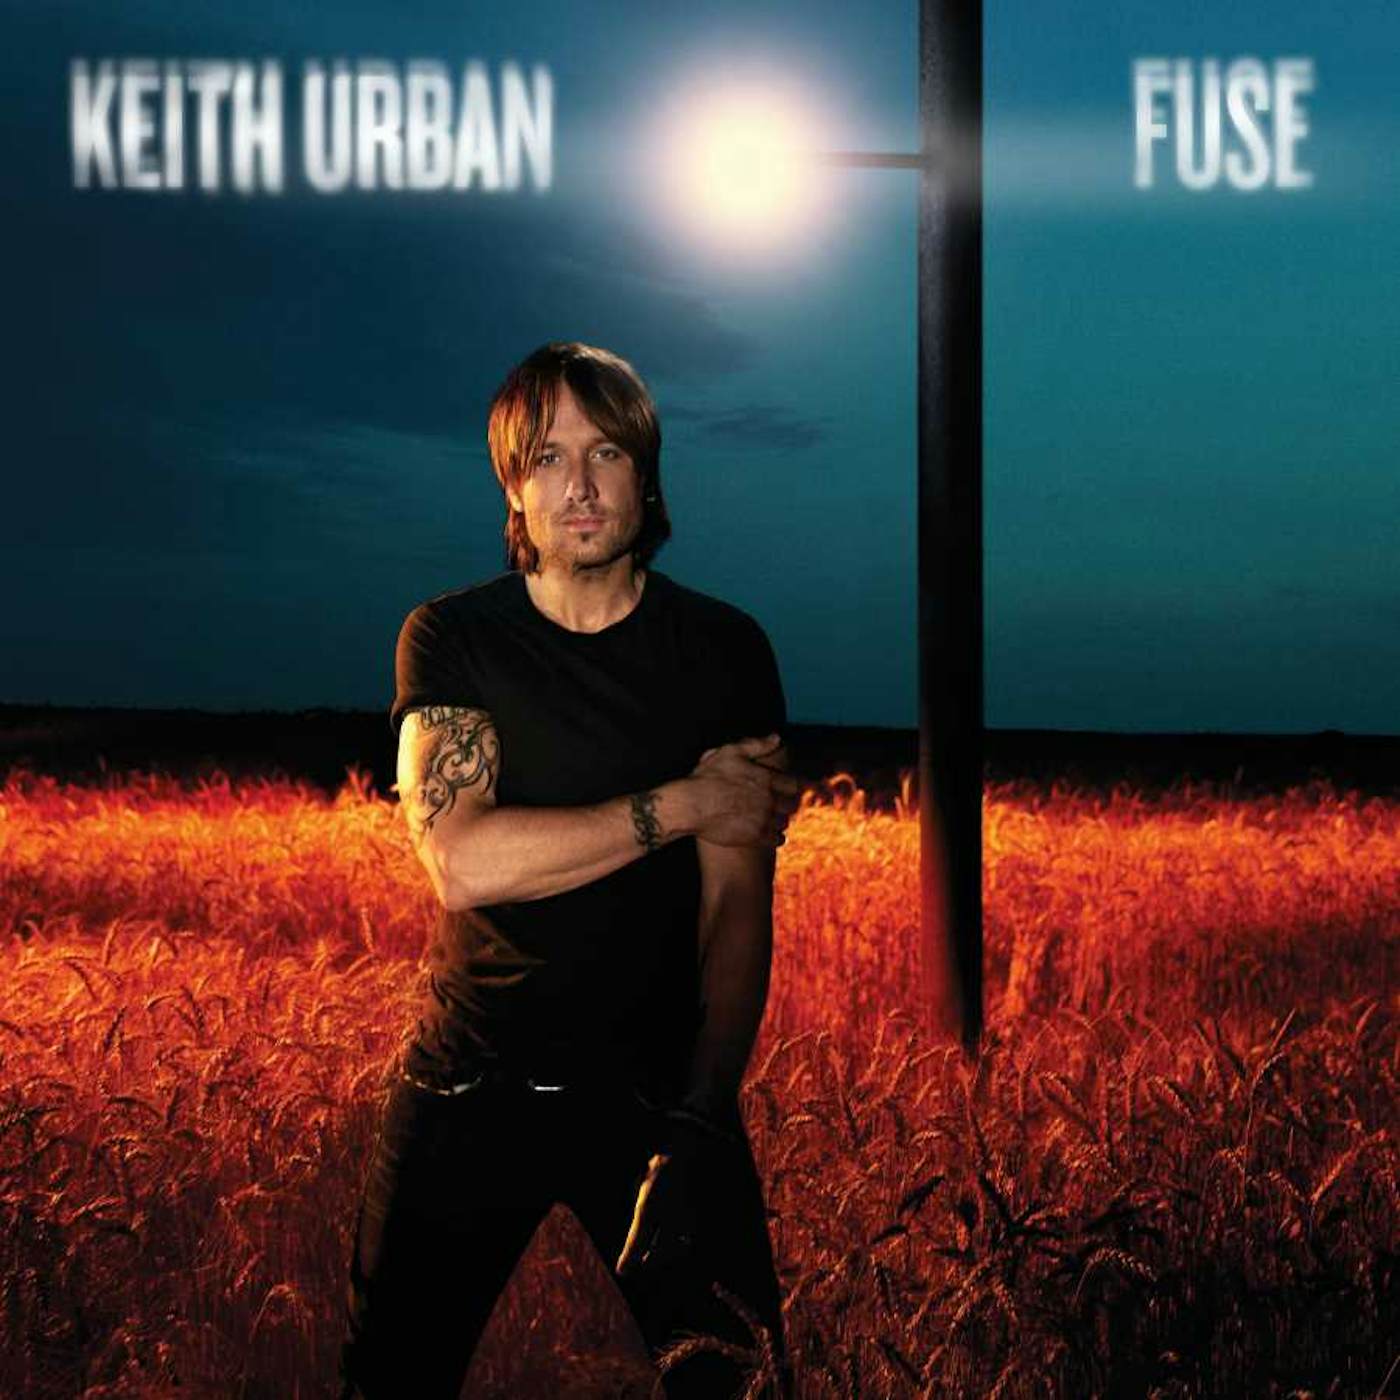 Keith Urban Fuse (LP) Vinyl Record